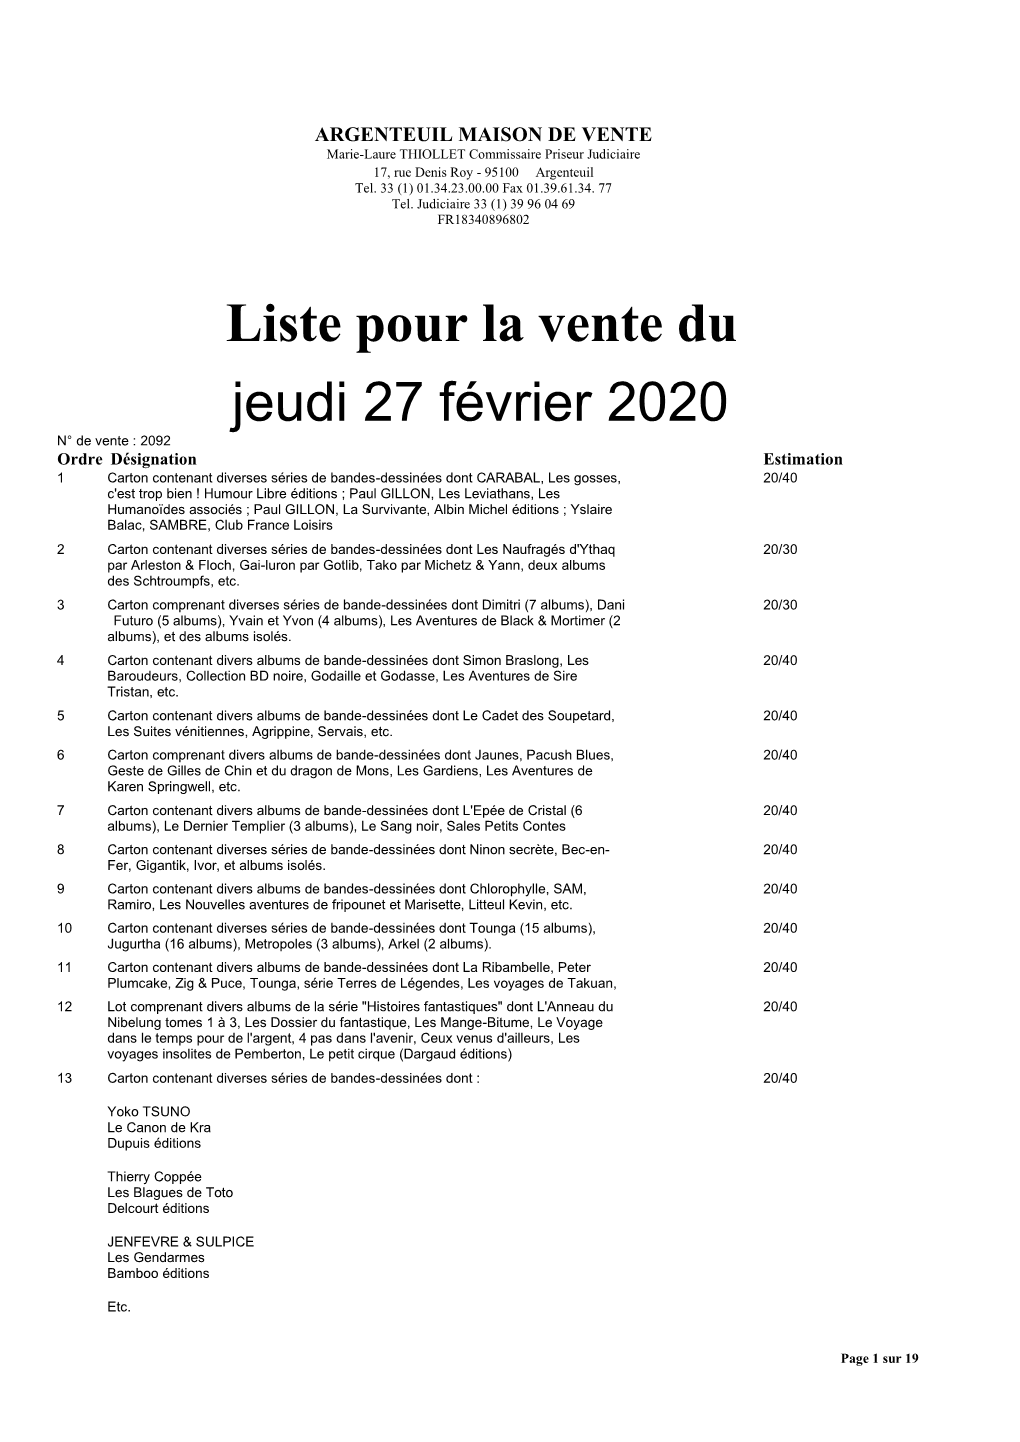 Liste Pour La Vente Du Jeudi 27 Février 2020